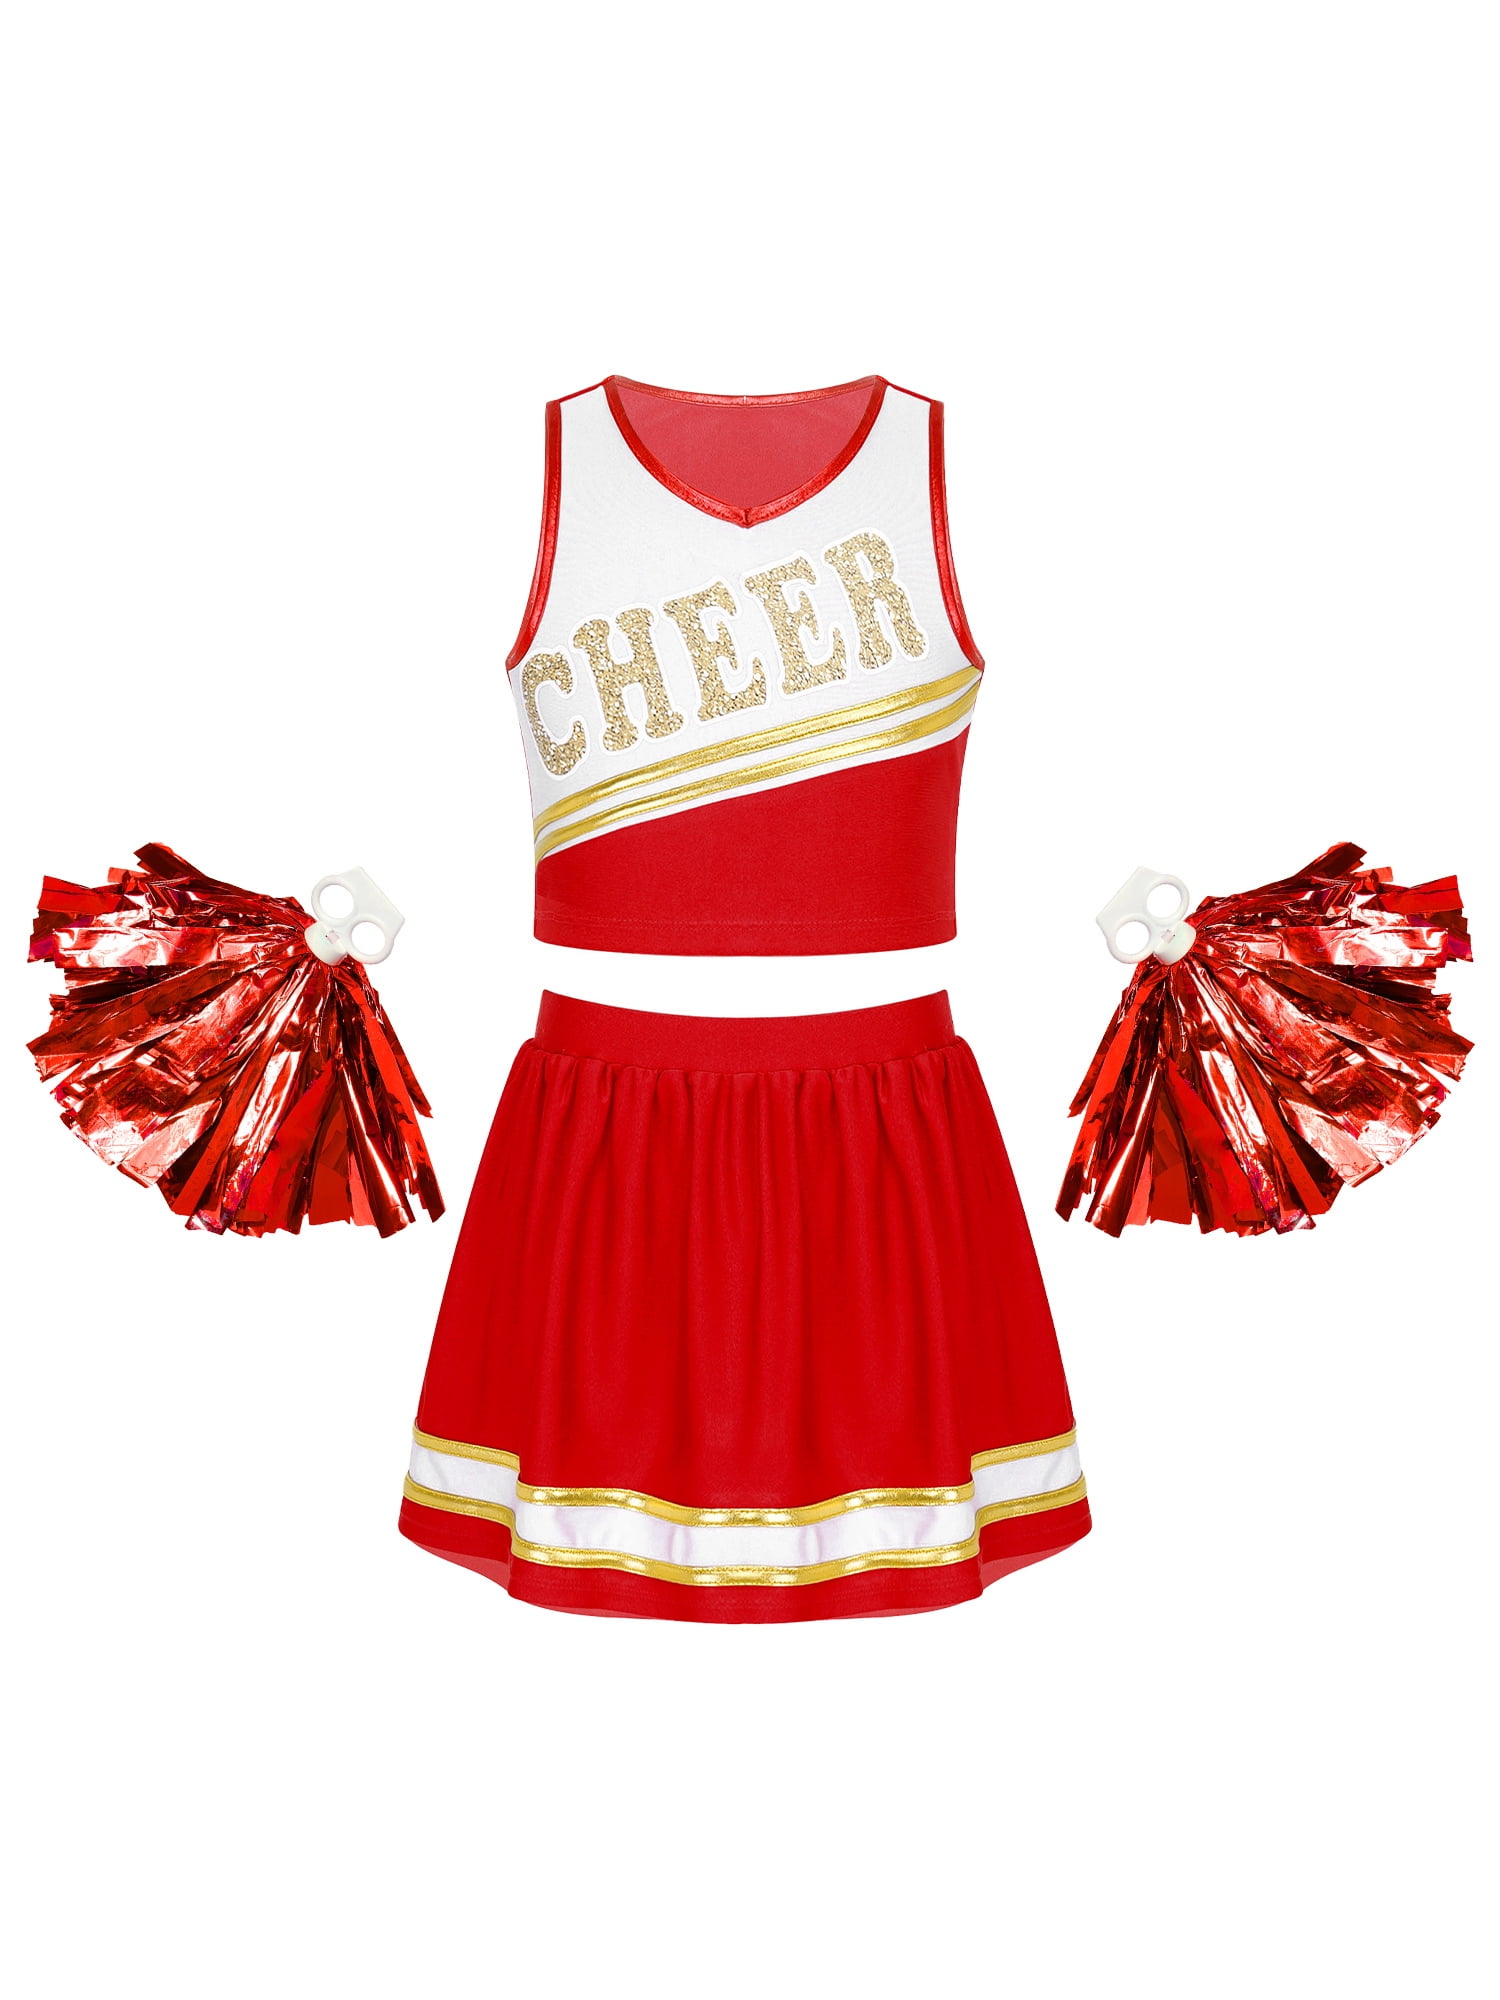 renvena Girls Cheer Leader Cosplay Halloween Party Uniform Cheerleading ...